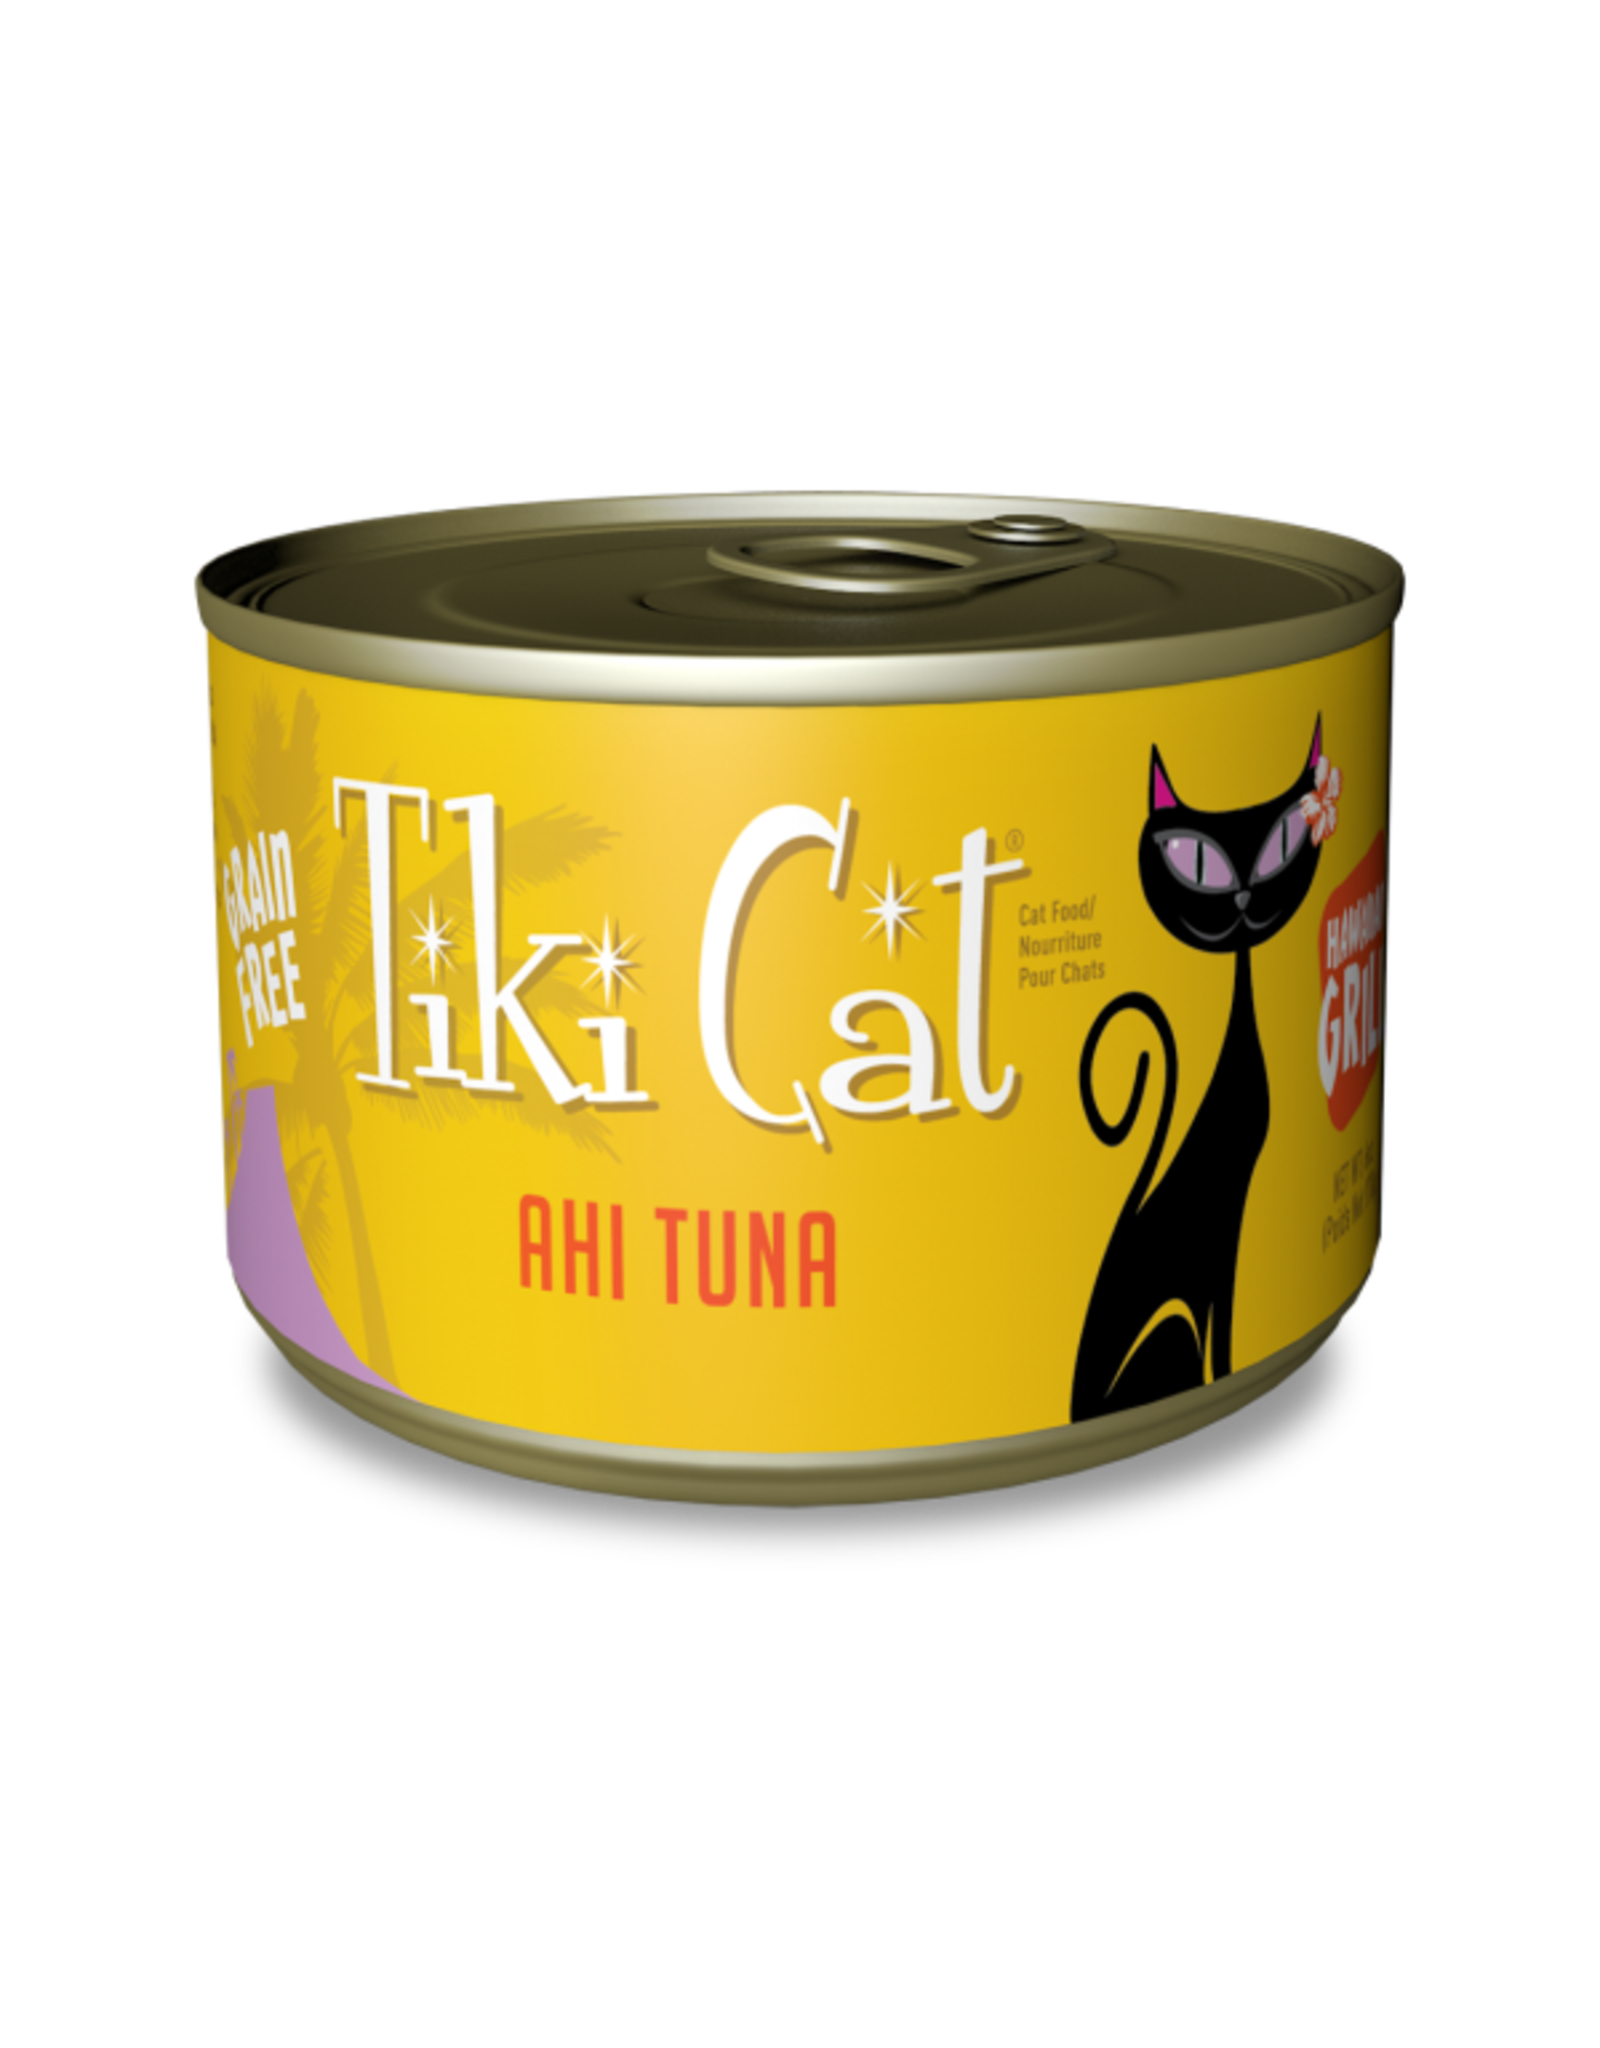 TikiCat Hawaiian Grill GF Ahi Tuna 6 oz